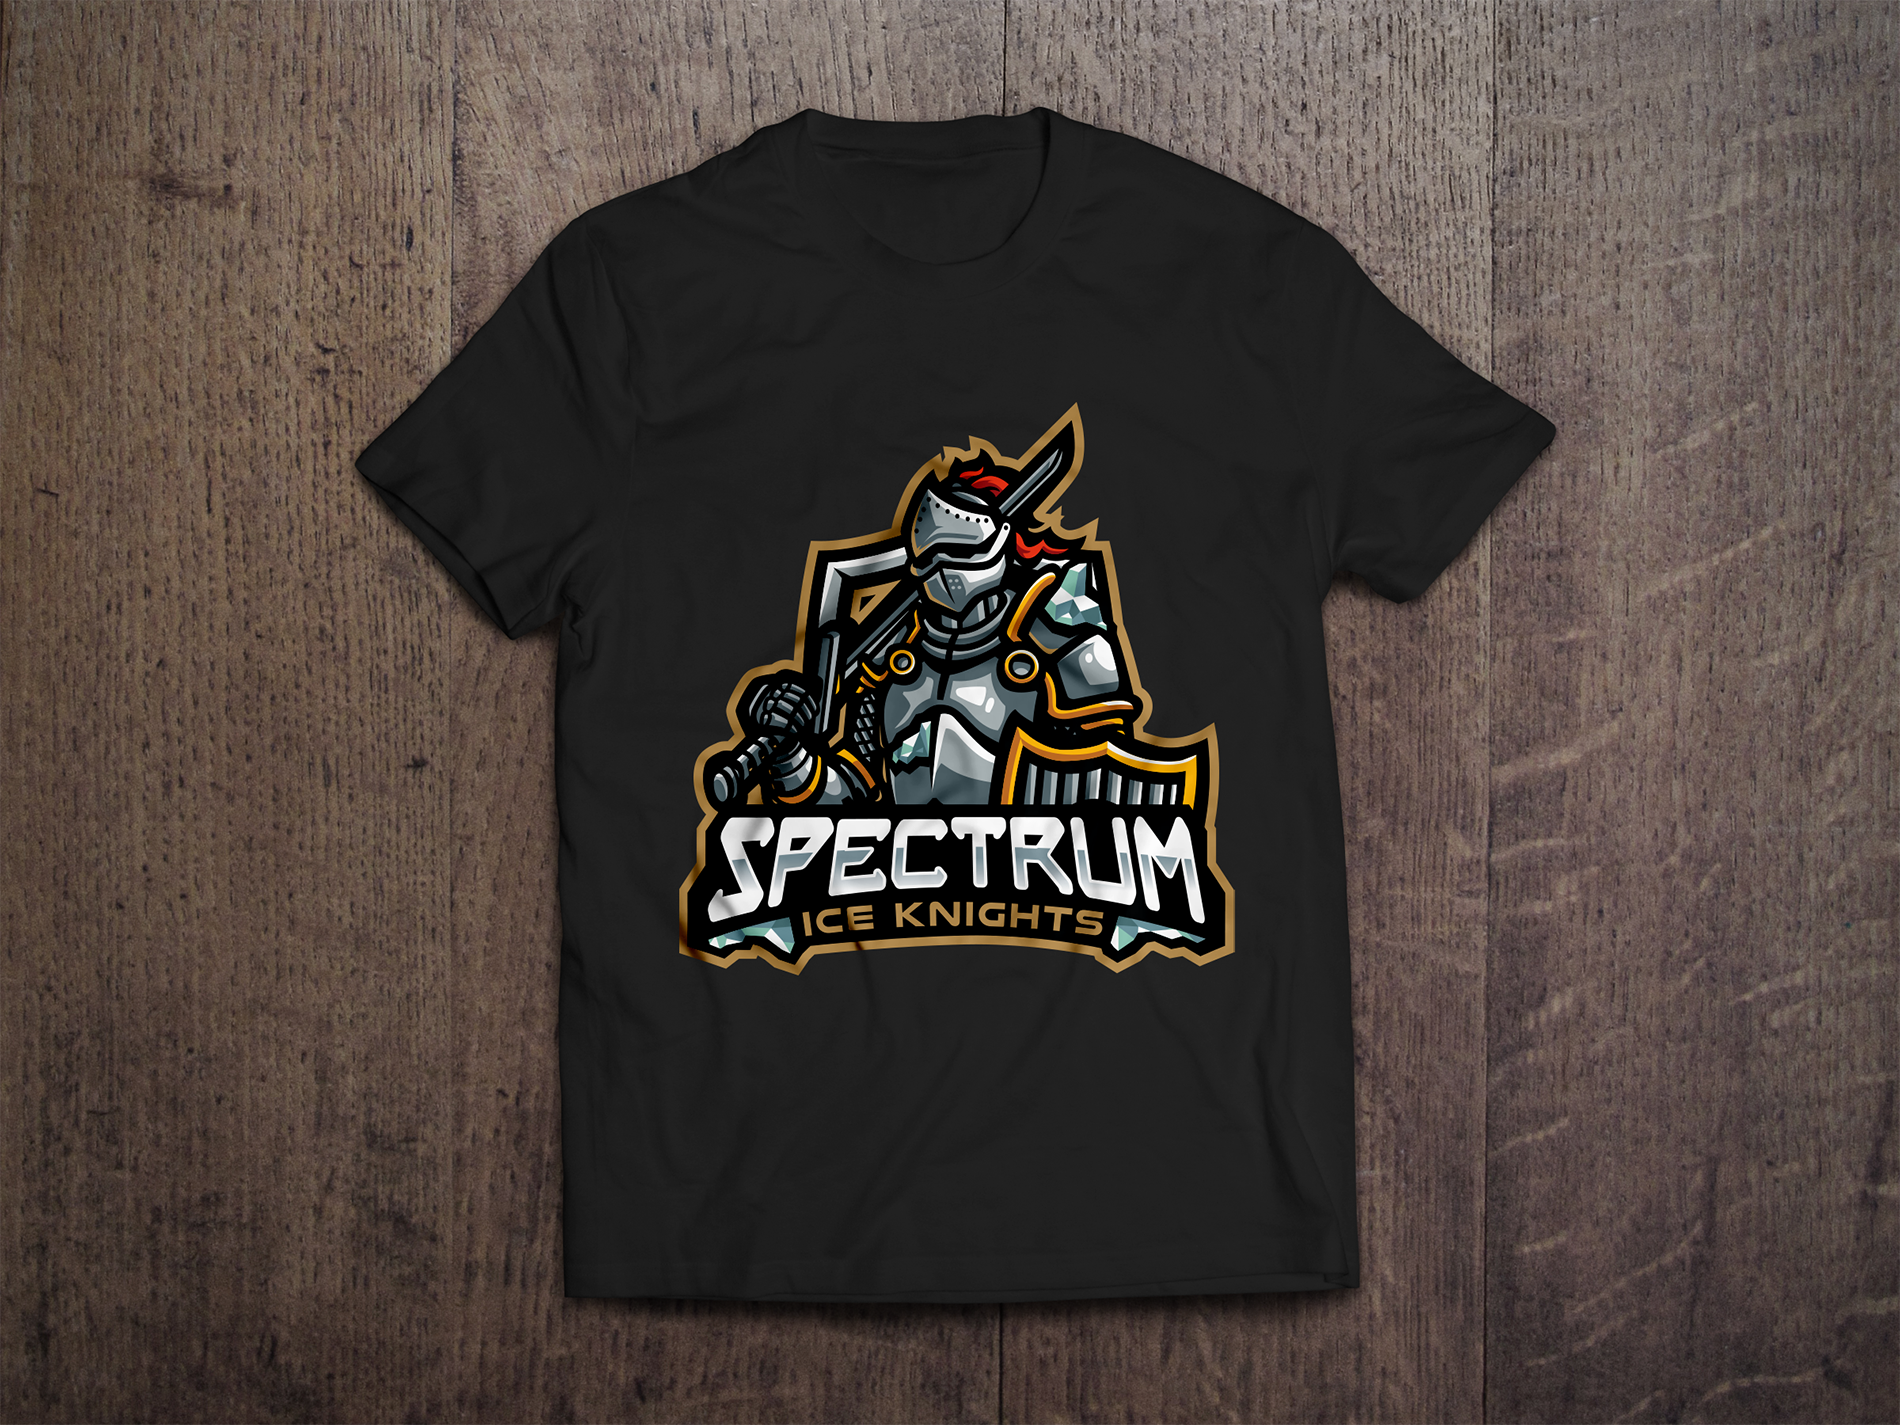 Spectrum Ice Knights Black Logo Tee - Redwolf Jersey Works